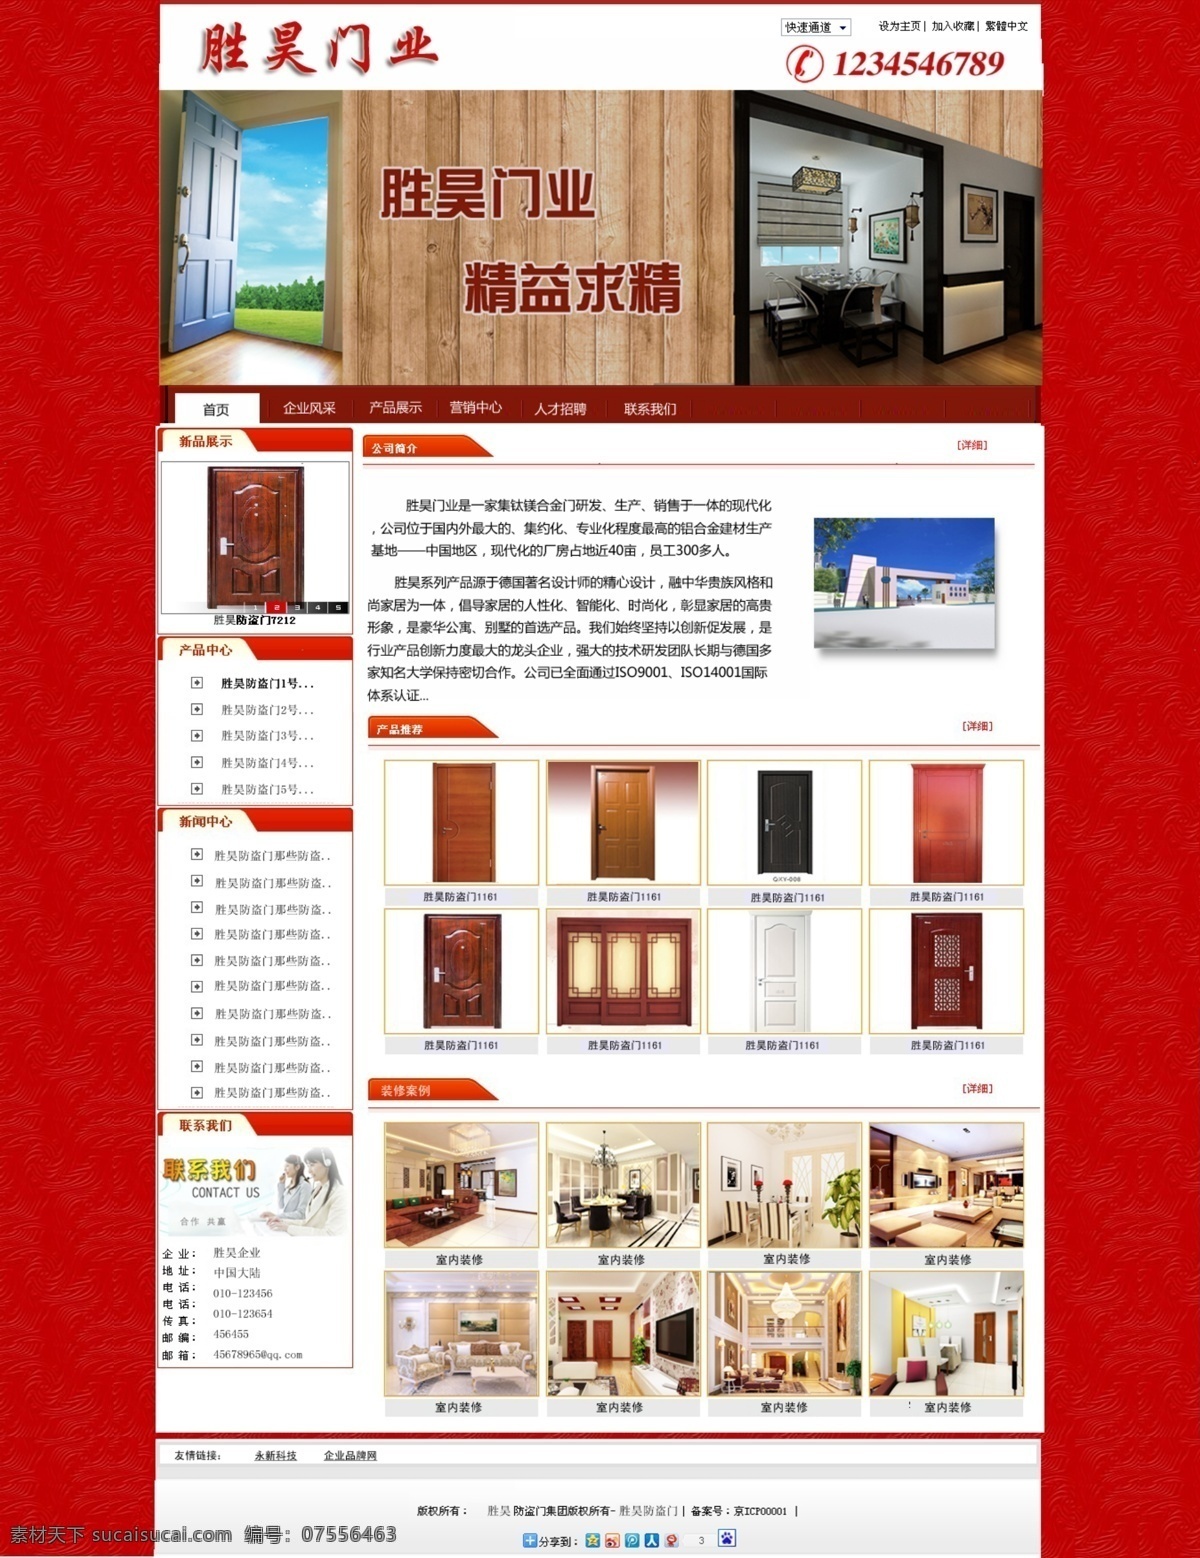 红色 家居 门业 模板 网页模板 网站 源文件 中文模板 模板下载 门业模板 网页素材